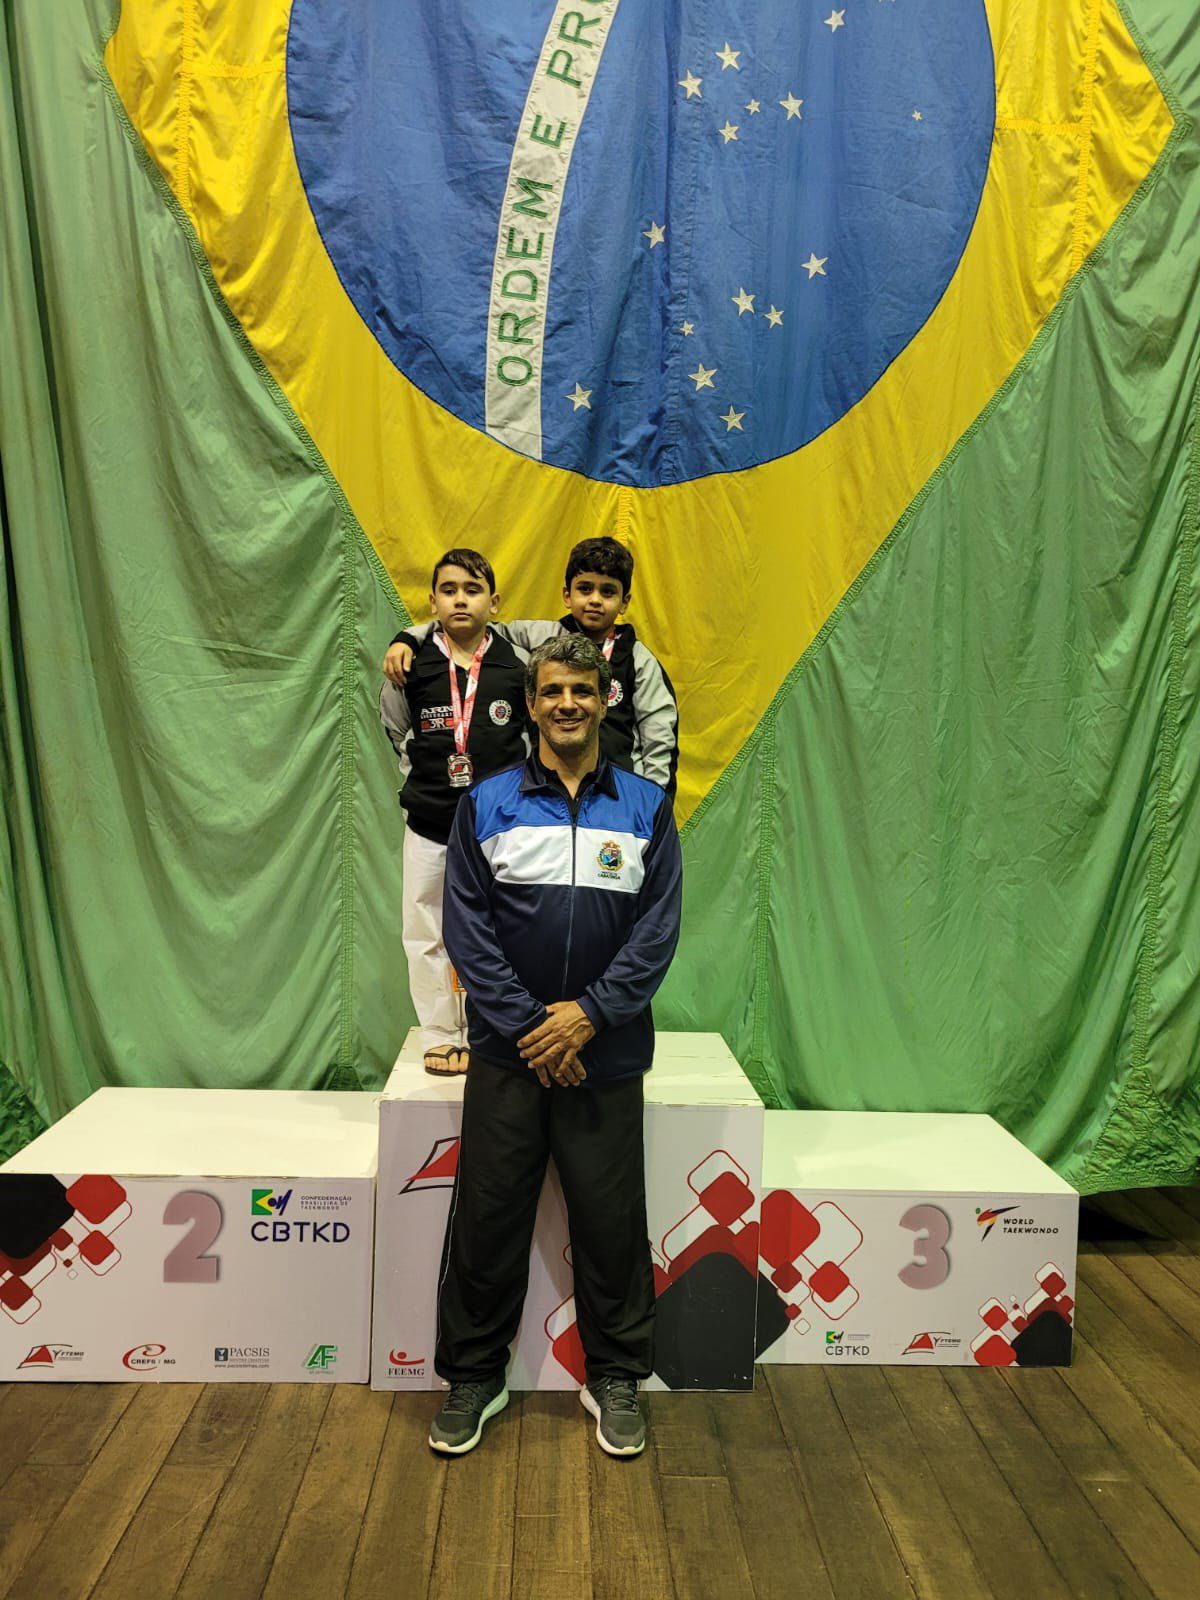 Atletas mirins ganham medalhas de prata em Campeonato Mineiro de Taekwondo